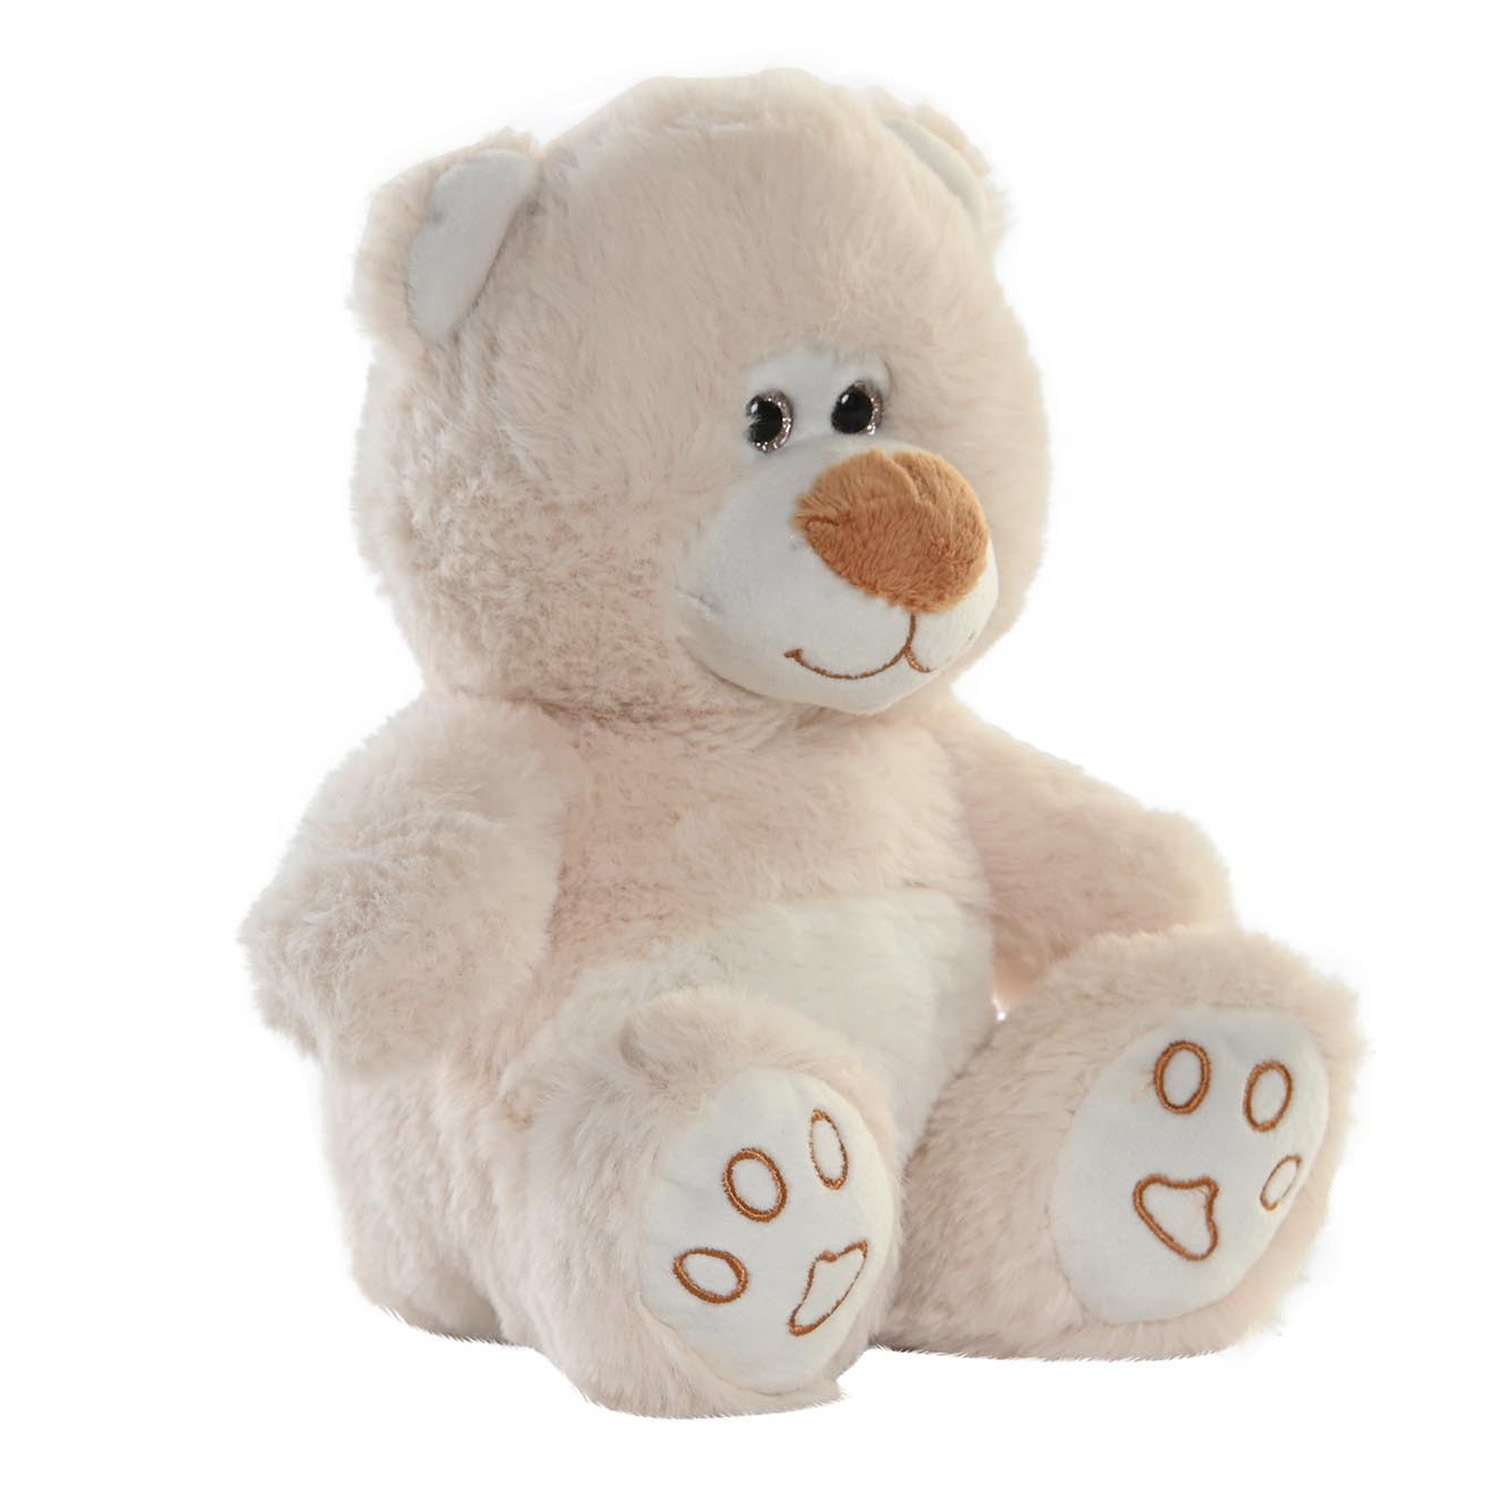 Items speelgoed Teddybeer knuffeldier - zachte pluche - 19 cm zittend - beige